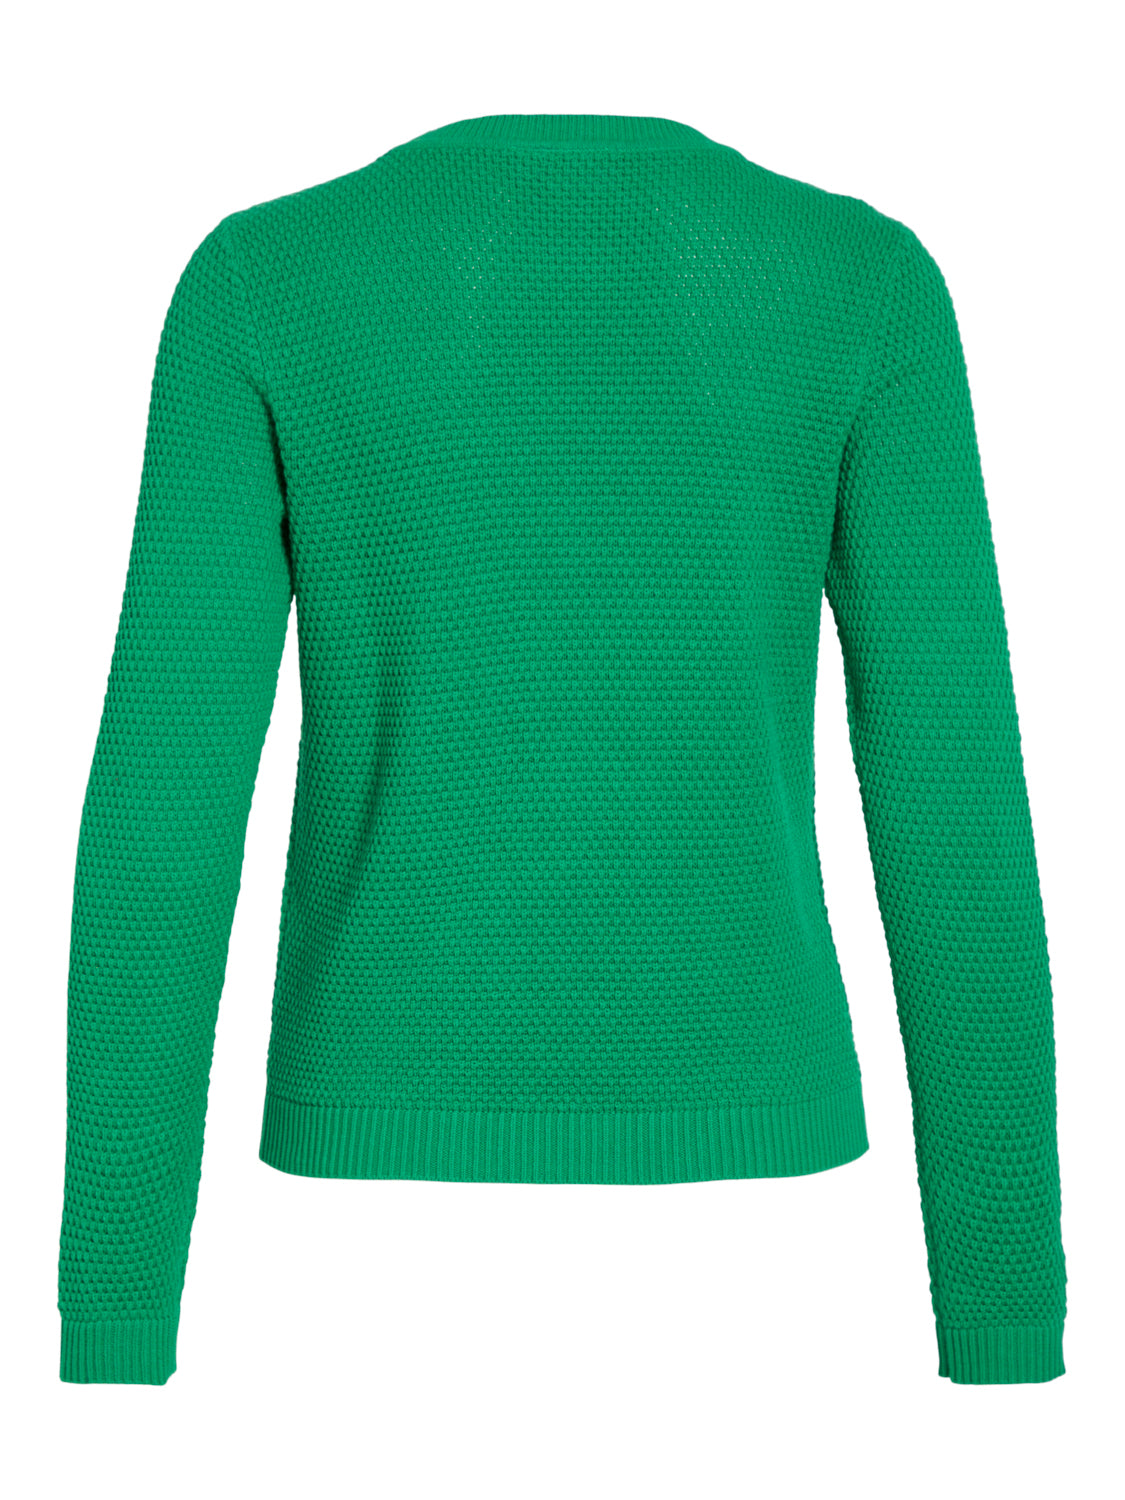 VIDALO Pullover - Bright Green